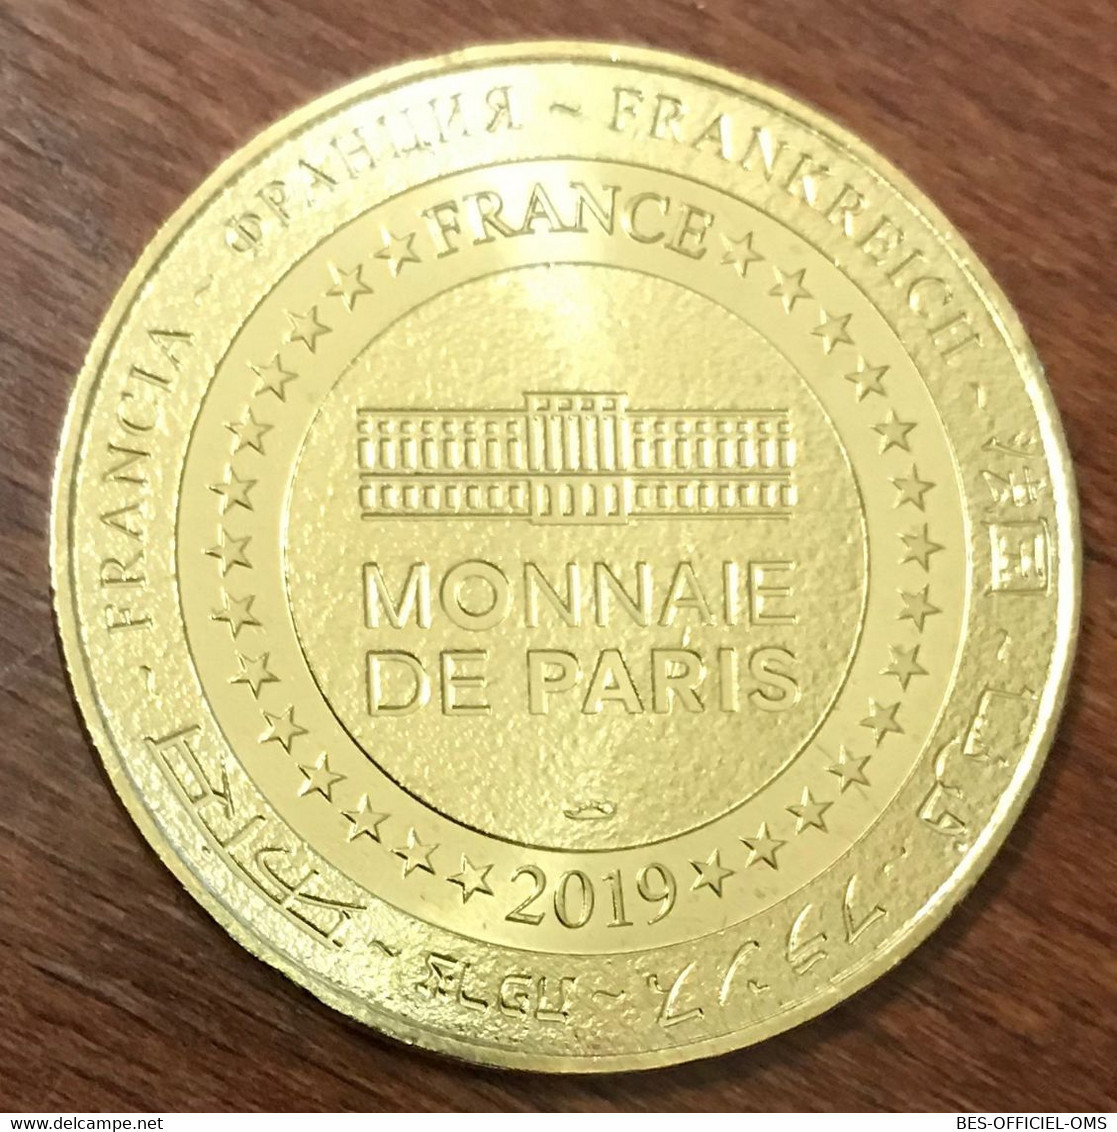 17 MARENNES ÎLE D'OLÉRON ÎLE NATURE MDP 2019 MEDAILLE SOUVENIR MONNAIE DE PARIS JETON TOURISTIQUE MEDALS COINS TOKENS - 2019